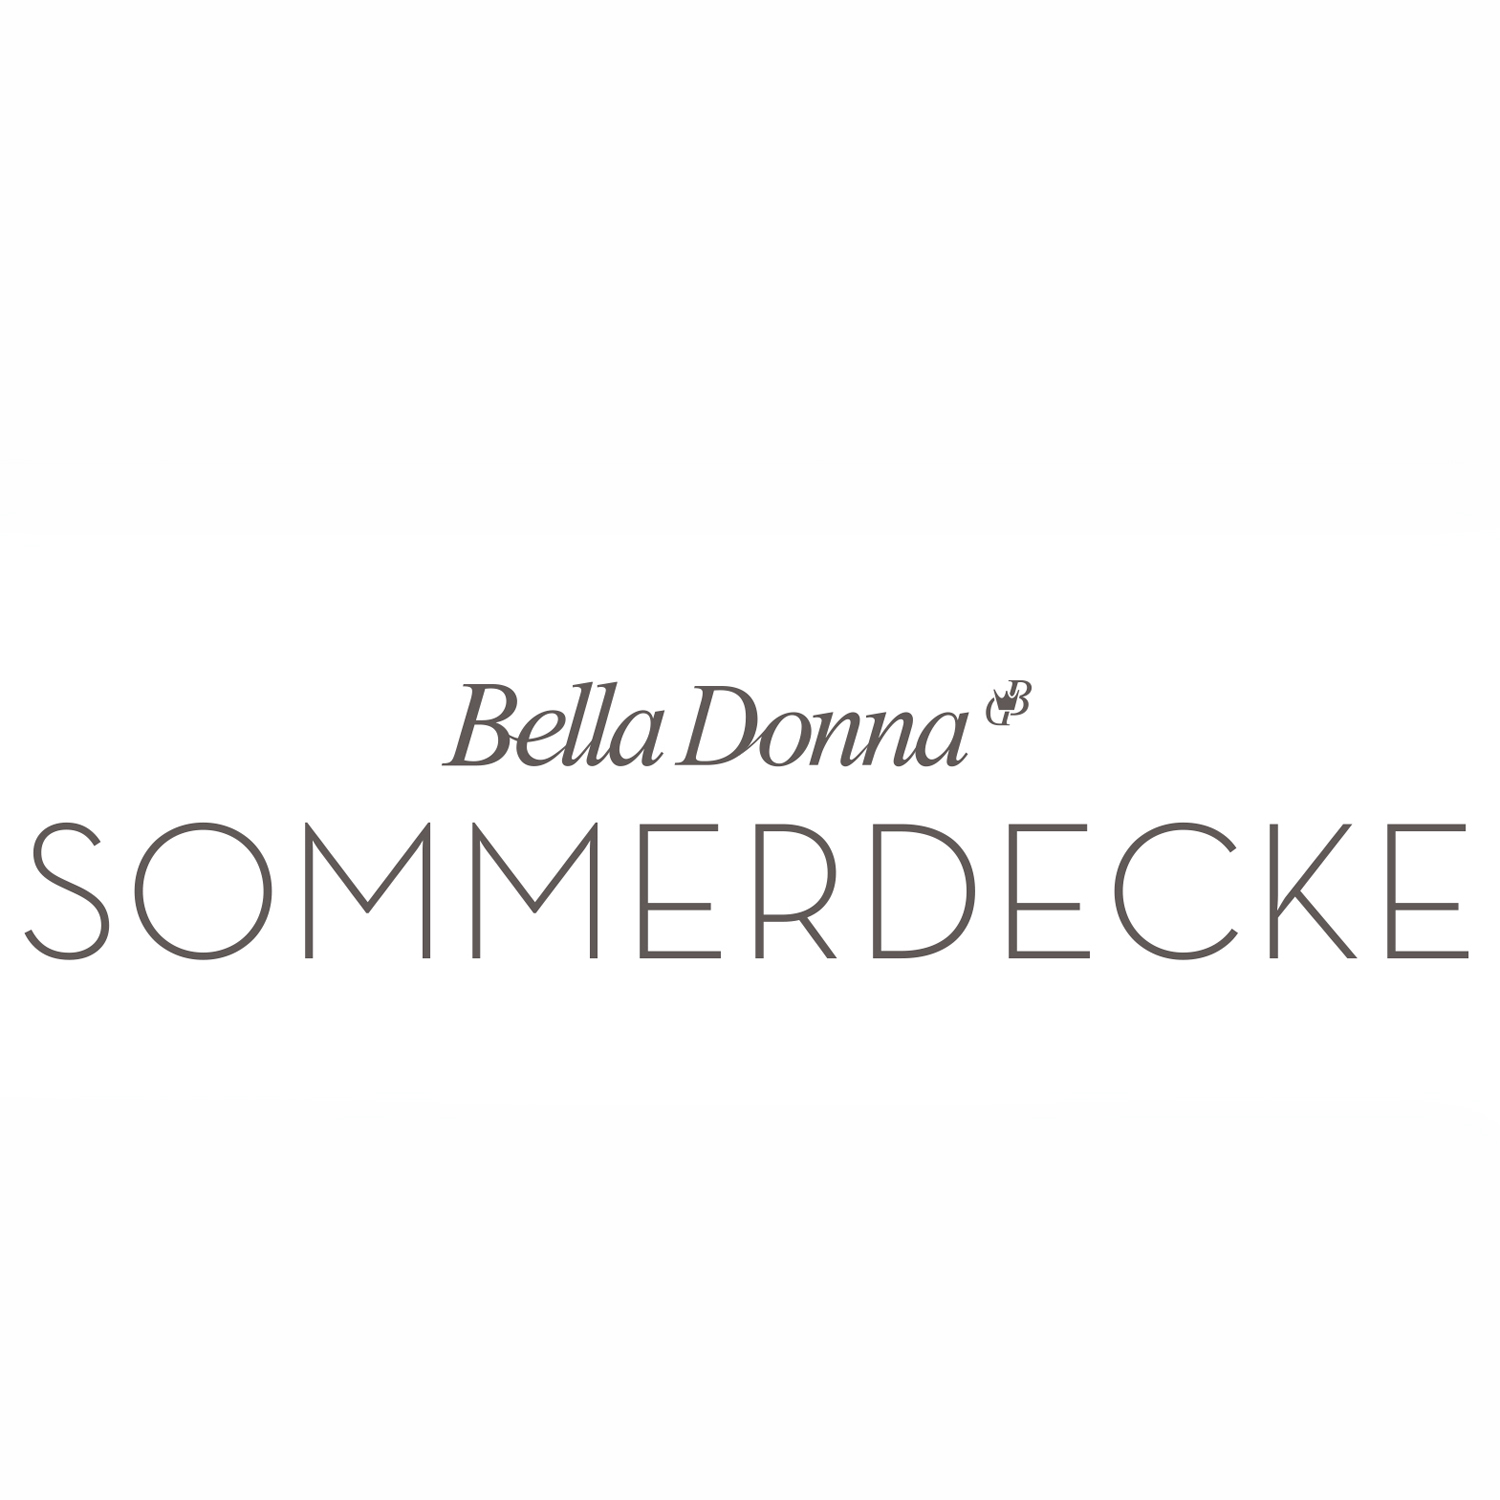 FORMESSE Sommerdecke Bella Donna grau 220x260cm